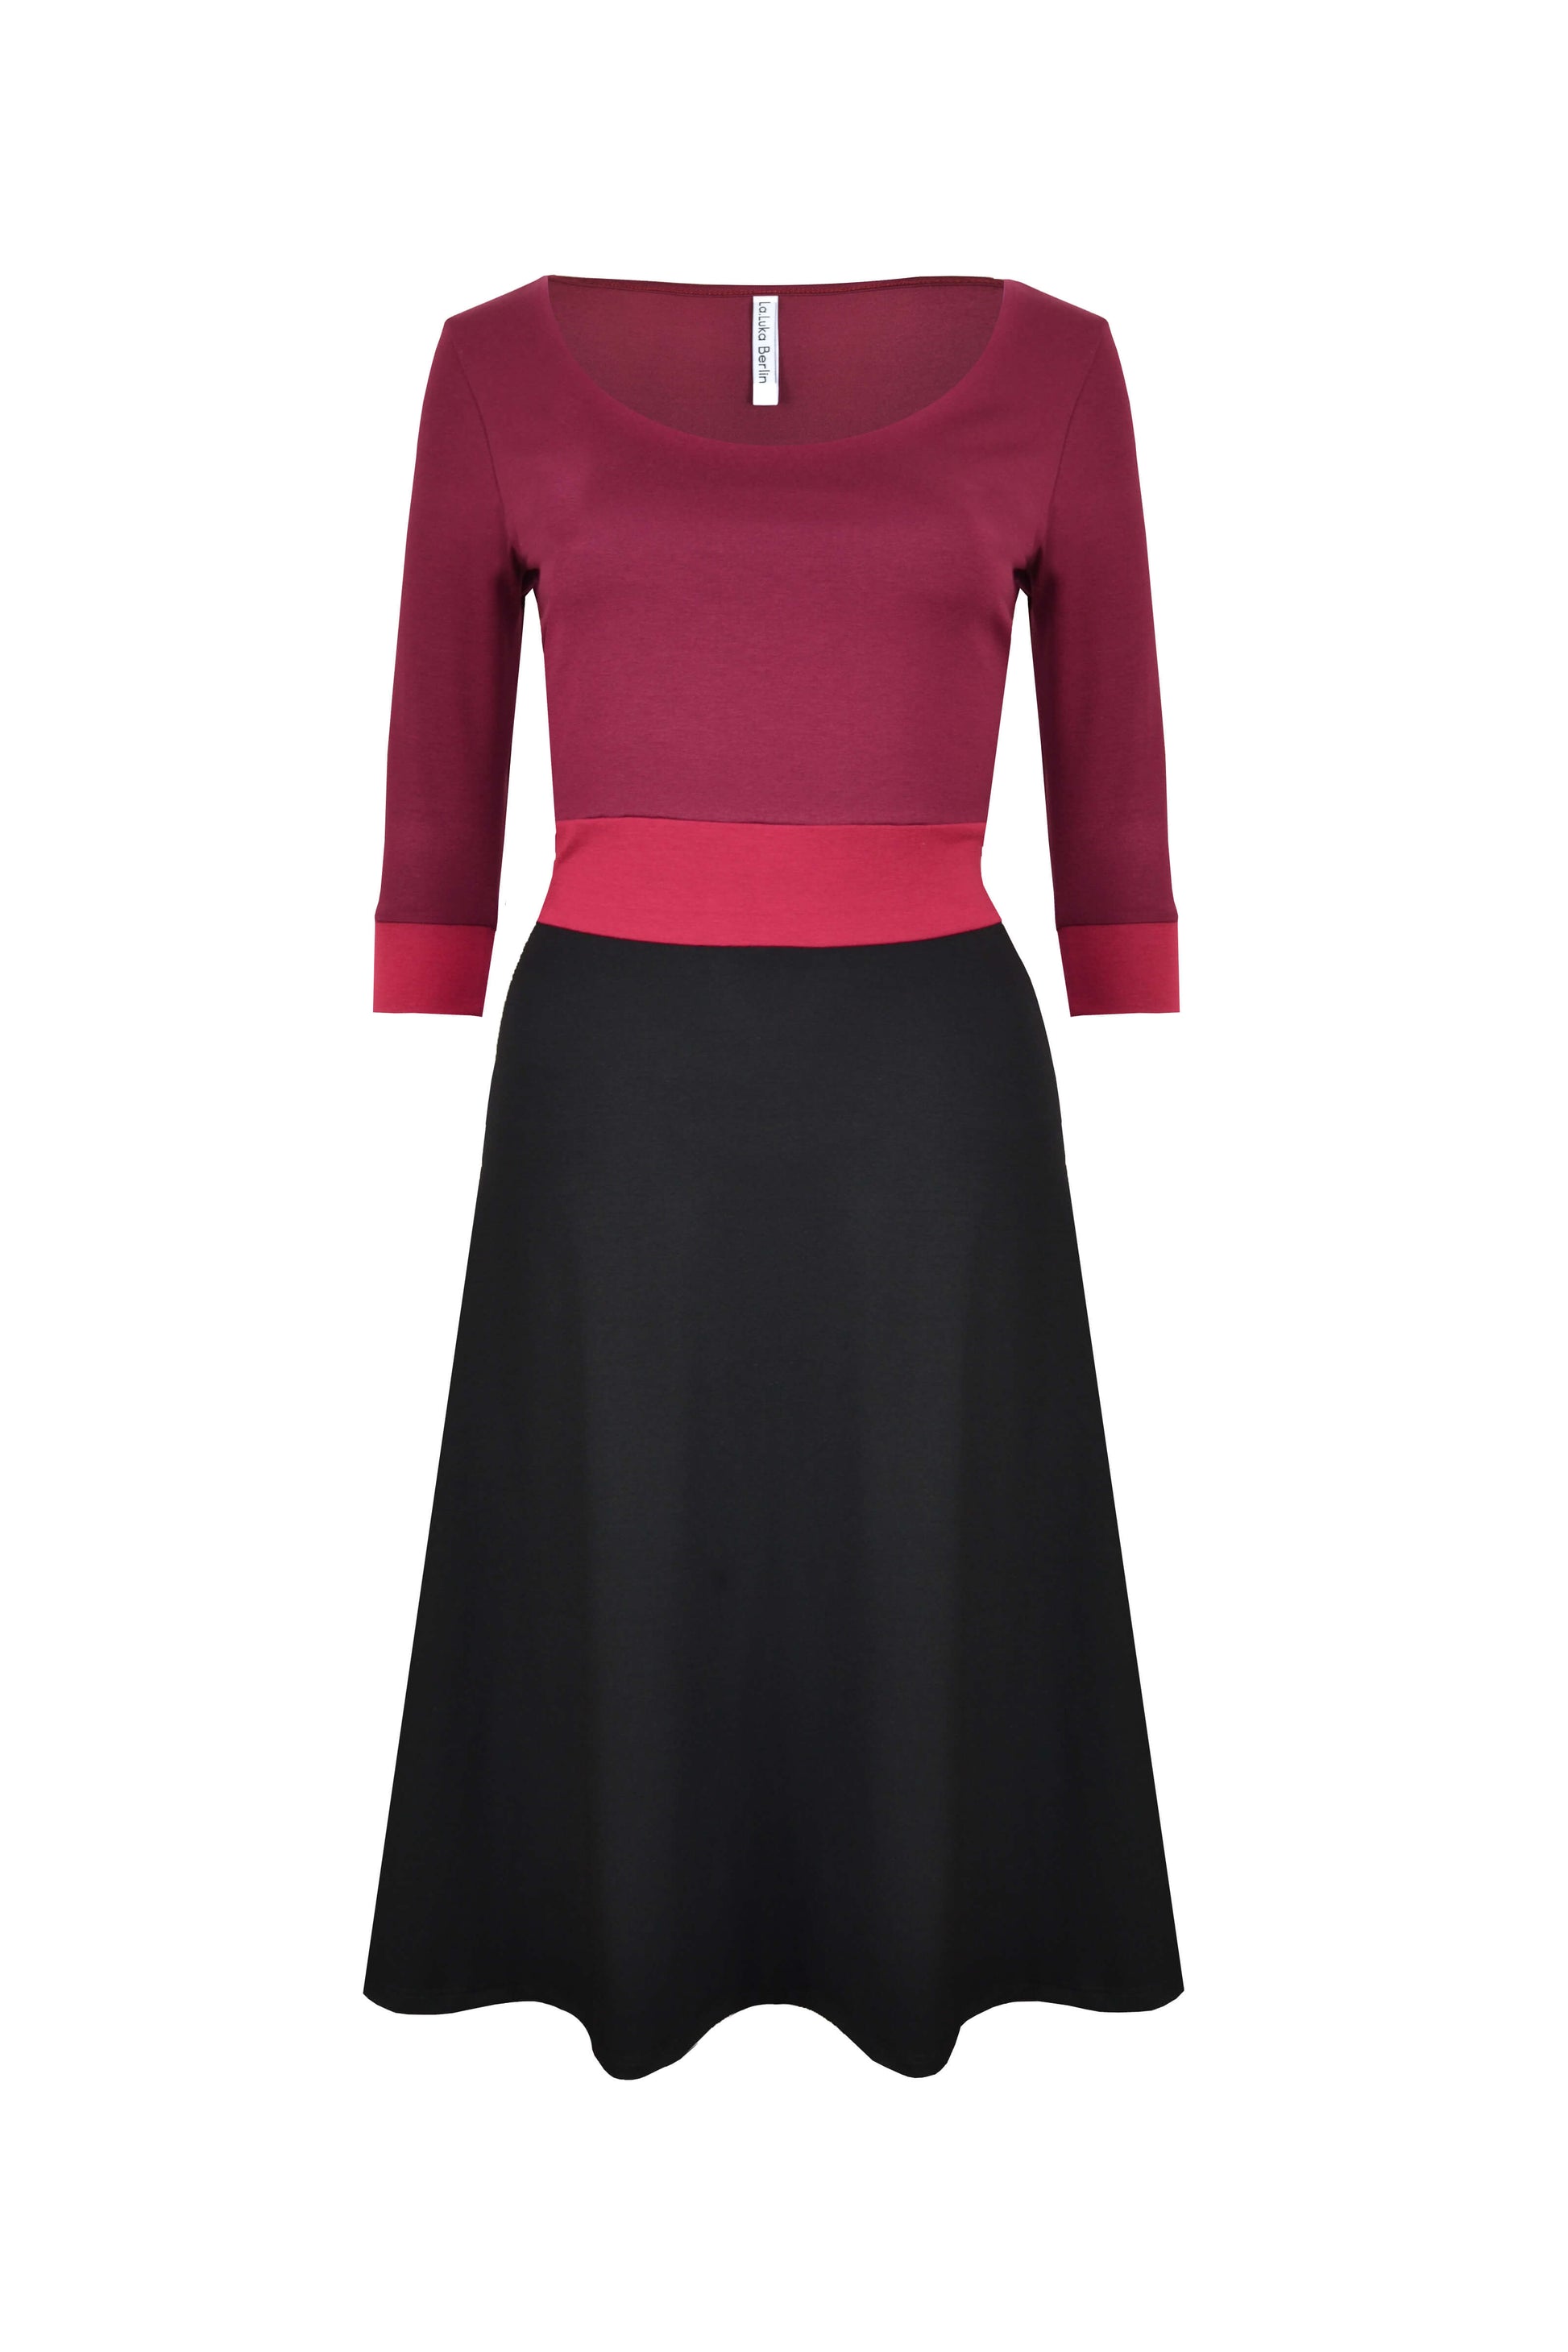 Rückansicht von knielangen Jerseykleid mit 3/4-Ärmeln in den Farben Schwarz und Bordeaux von LA.LUKA Berlin